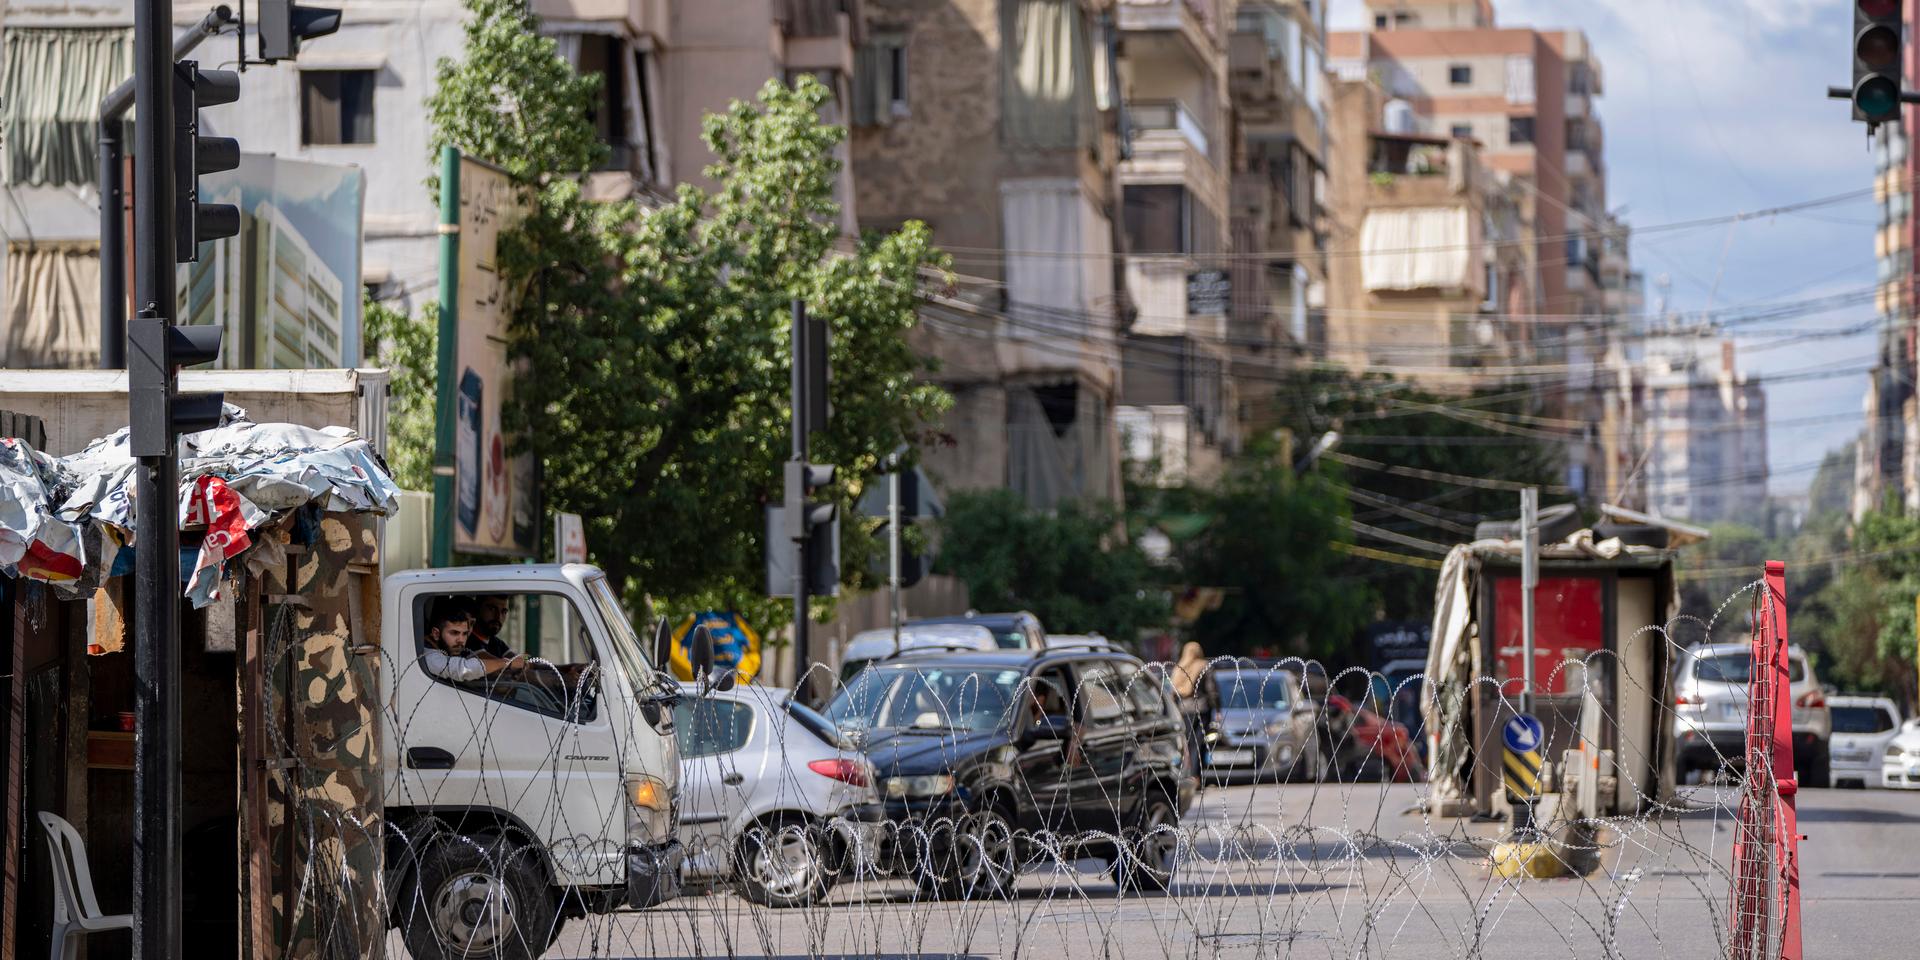 Libanons militär satte upp vägspärrar i området där våldsamheterna bröt ut den 14 oktober. Arkivbild.